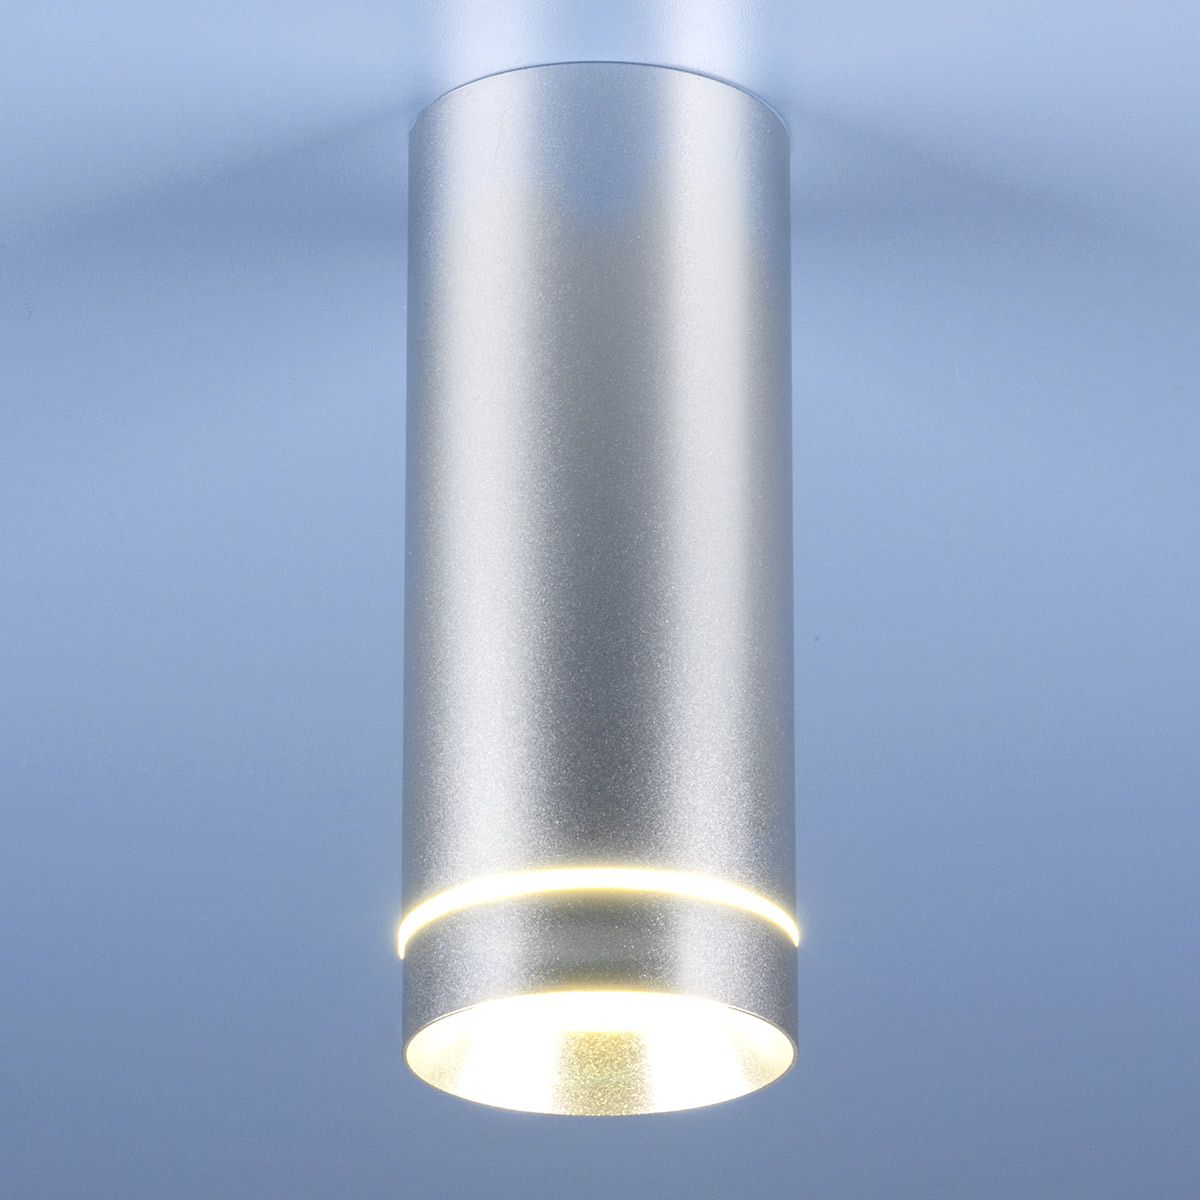 Накладной акцентный светодиодный светильник DLR022 12W 4200K хром матовый